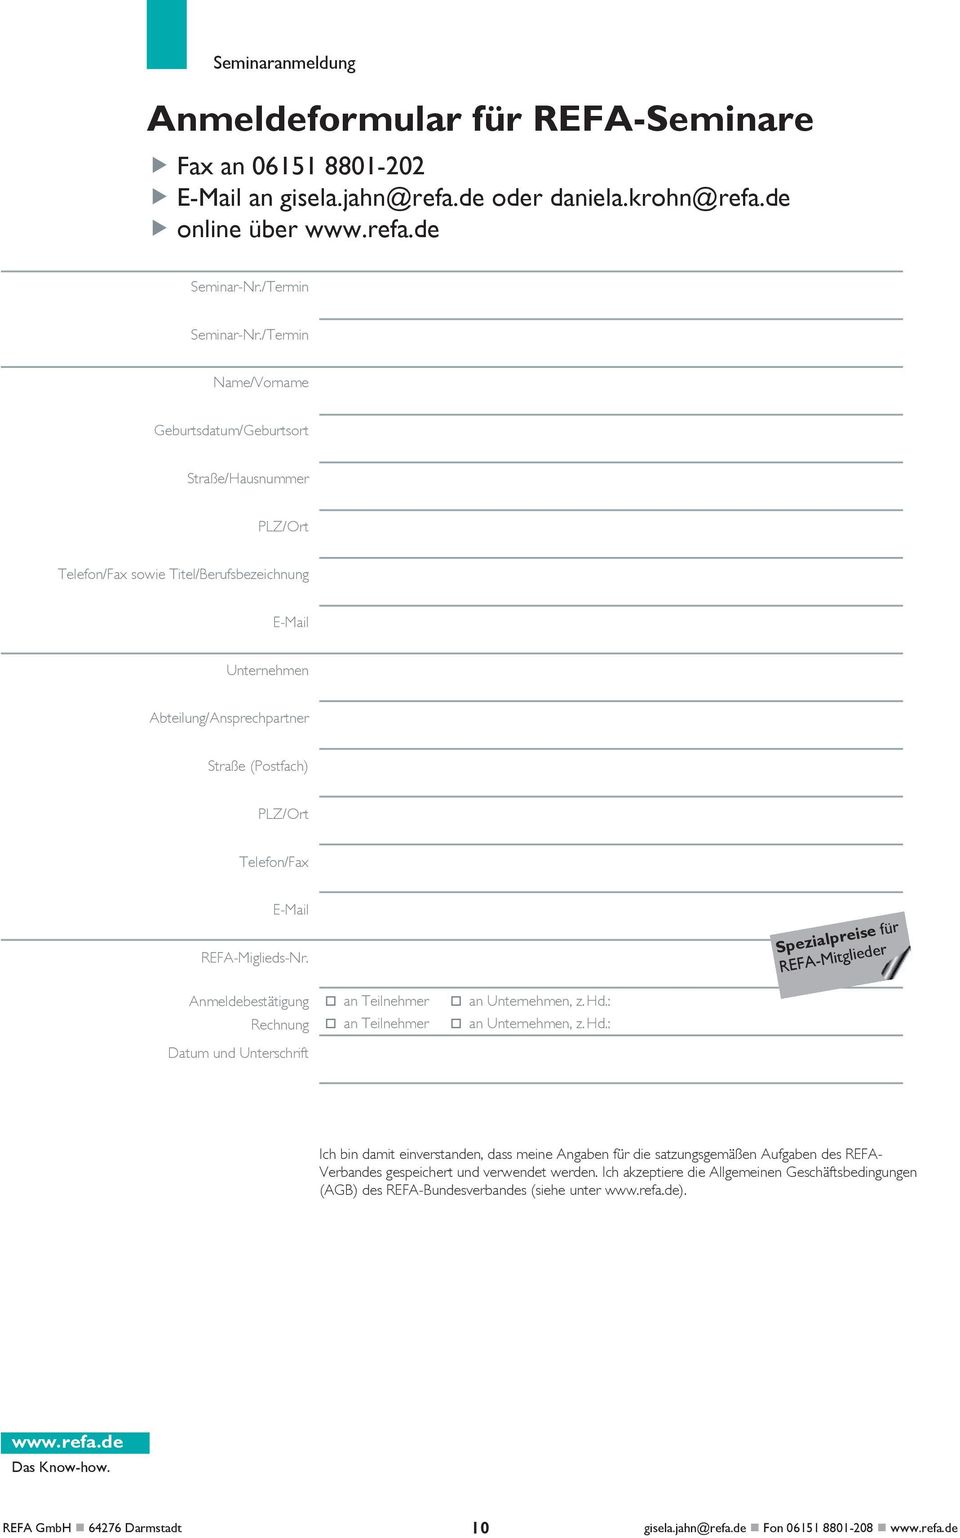 E-Mail REFA-Miglieds-Nr. Spezialpreise für REFA-Mitglieder Anmeldebestätigung Rechnung Datum und Unterschrift an Teilnehmer an Teilnehmer an Unternehmen, z. Hd.